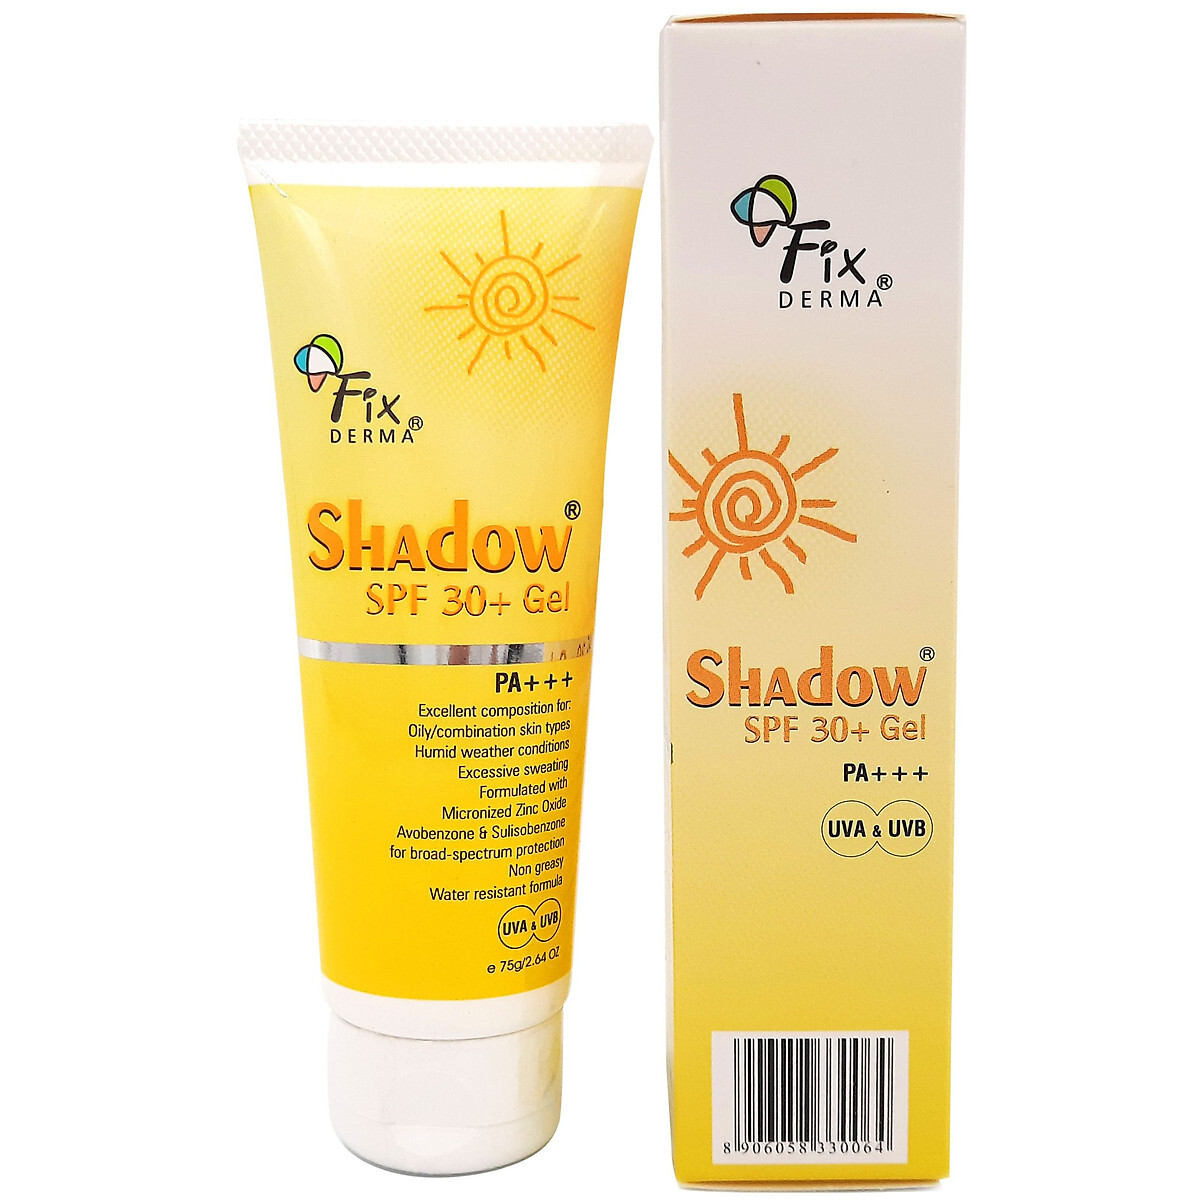 Kem chống nắng dưỡng da Shadow Fixderma SPF 30+ GEL 75g